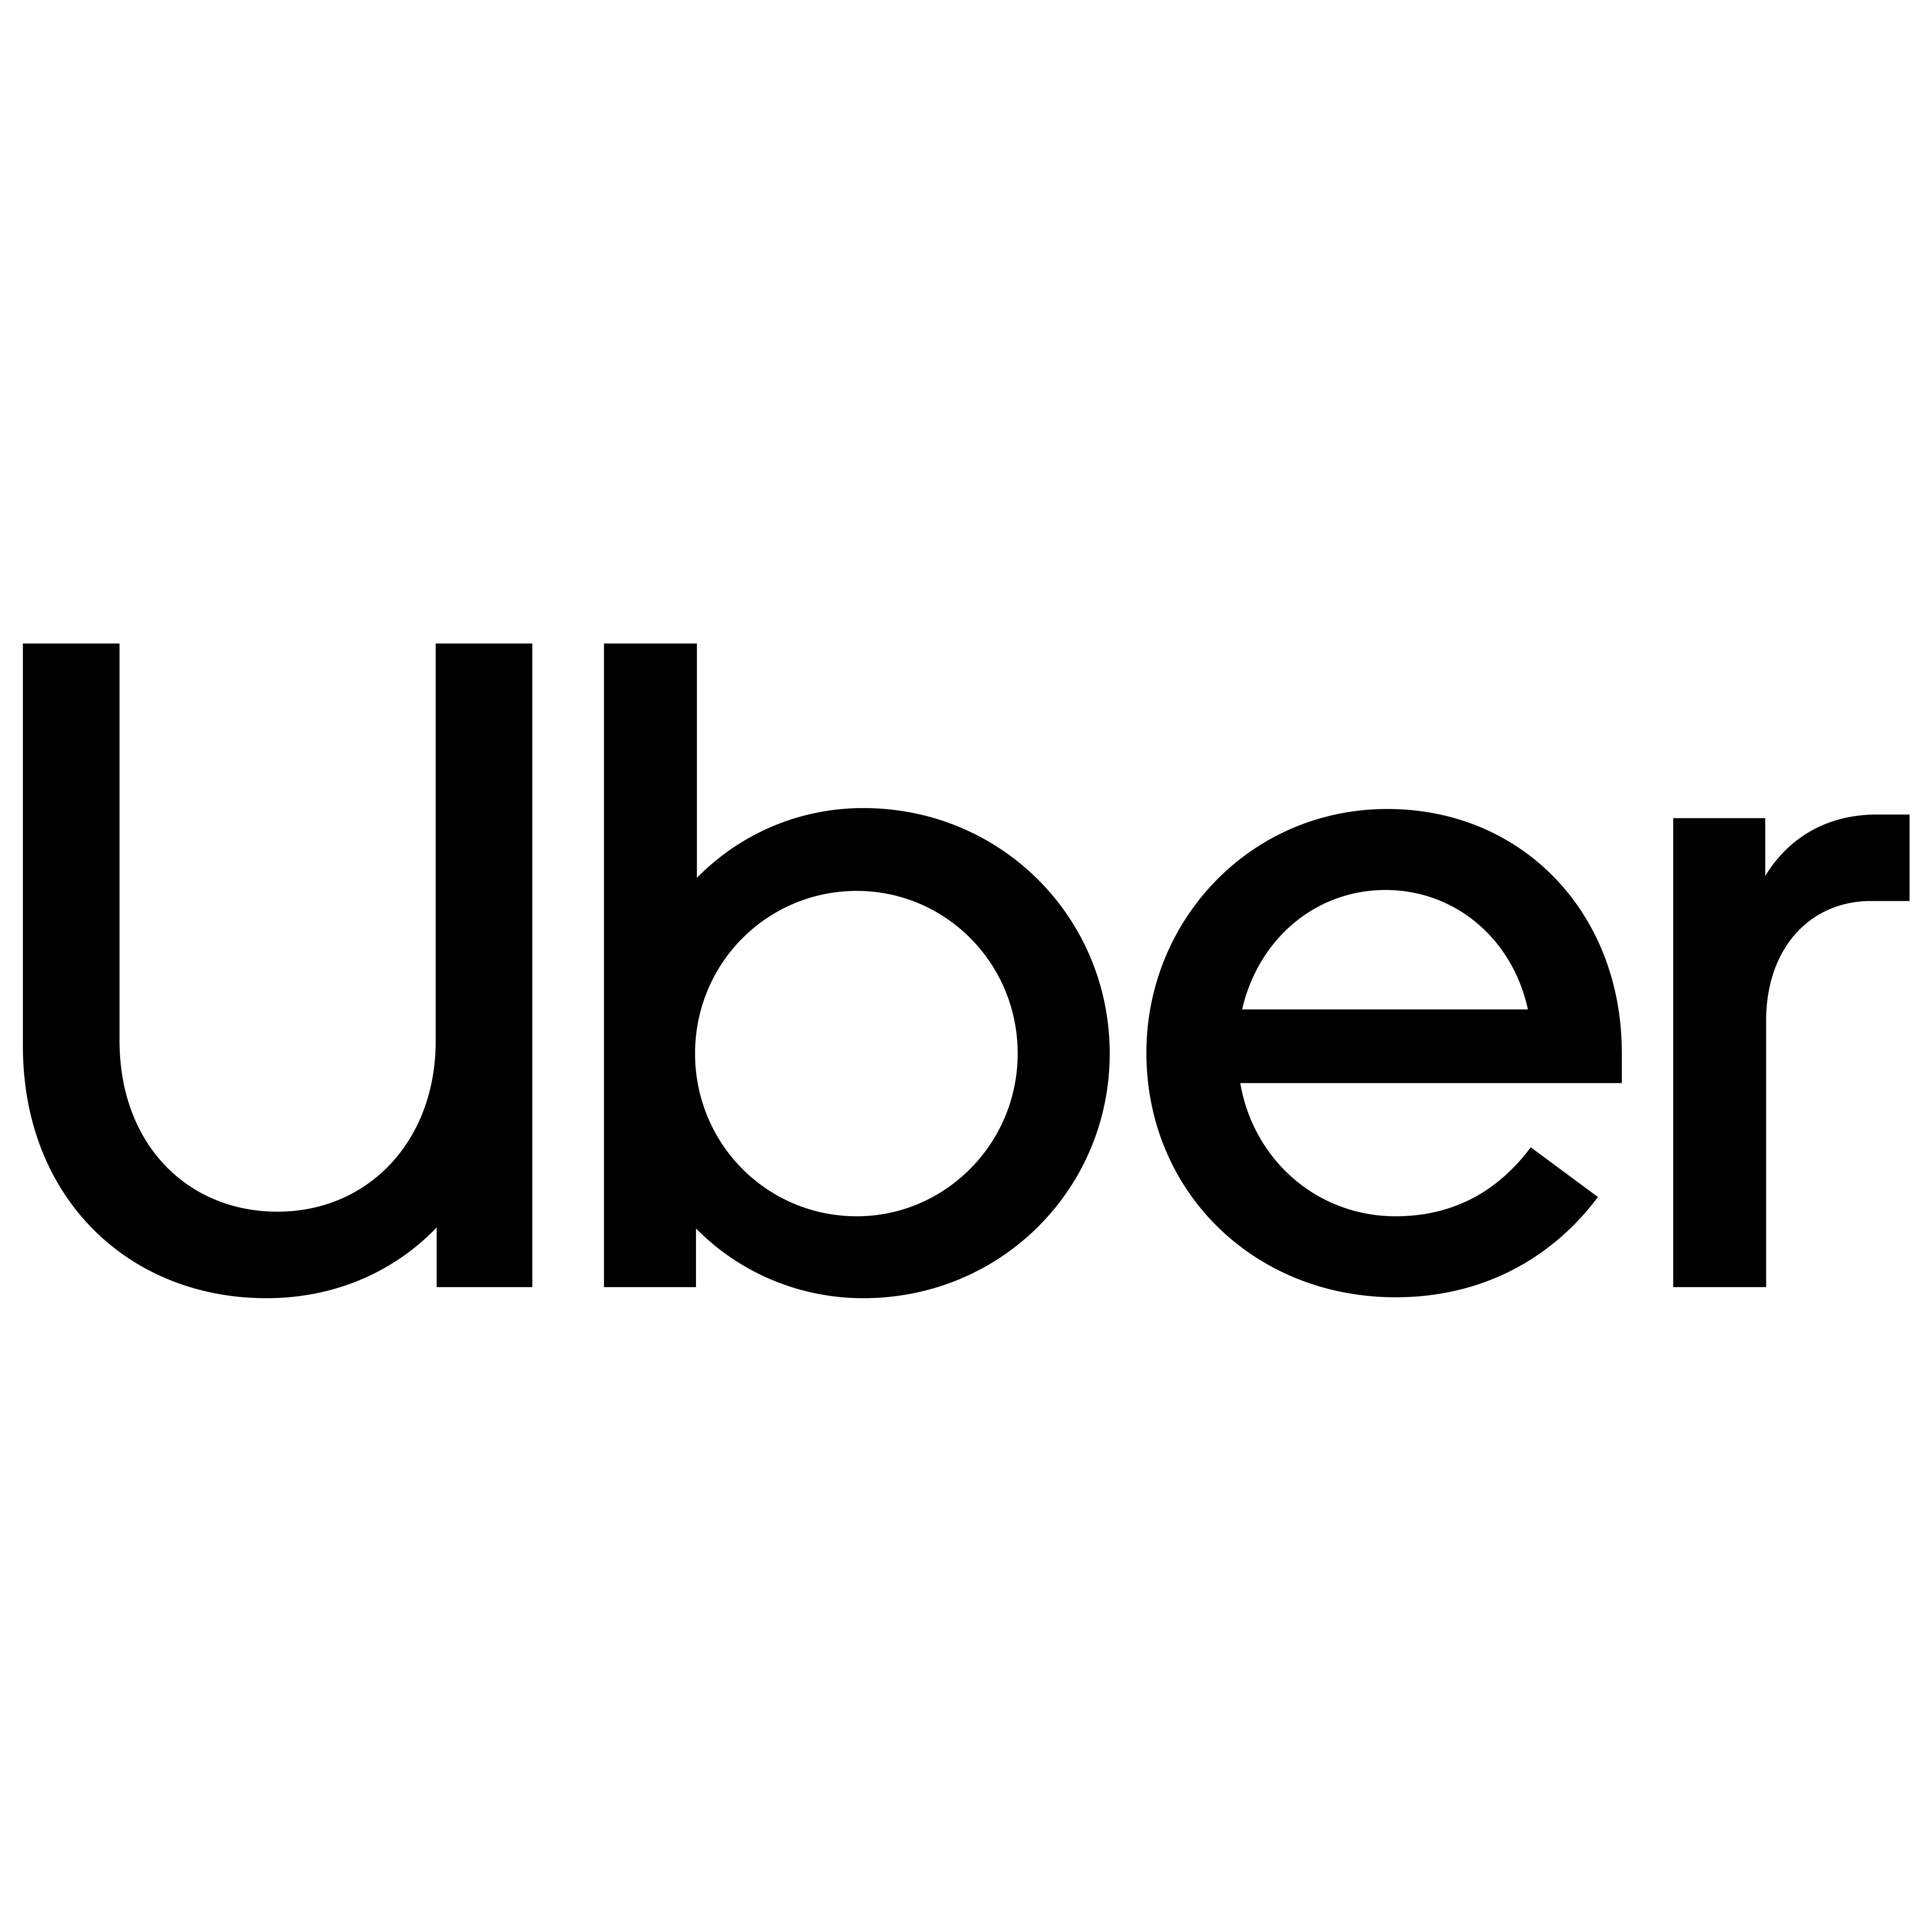 Uber - Centro de Atención. Logo